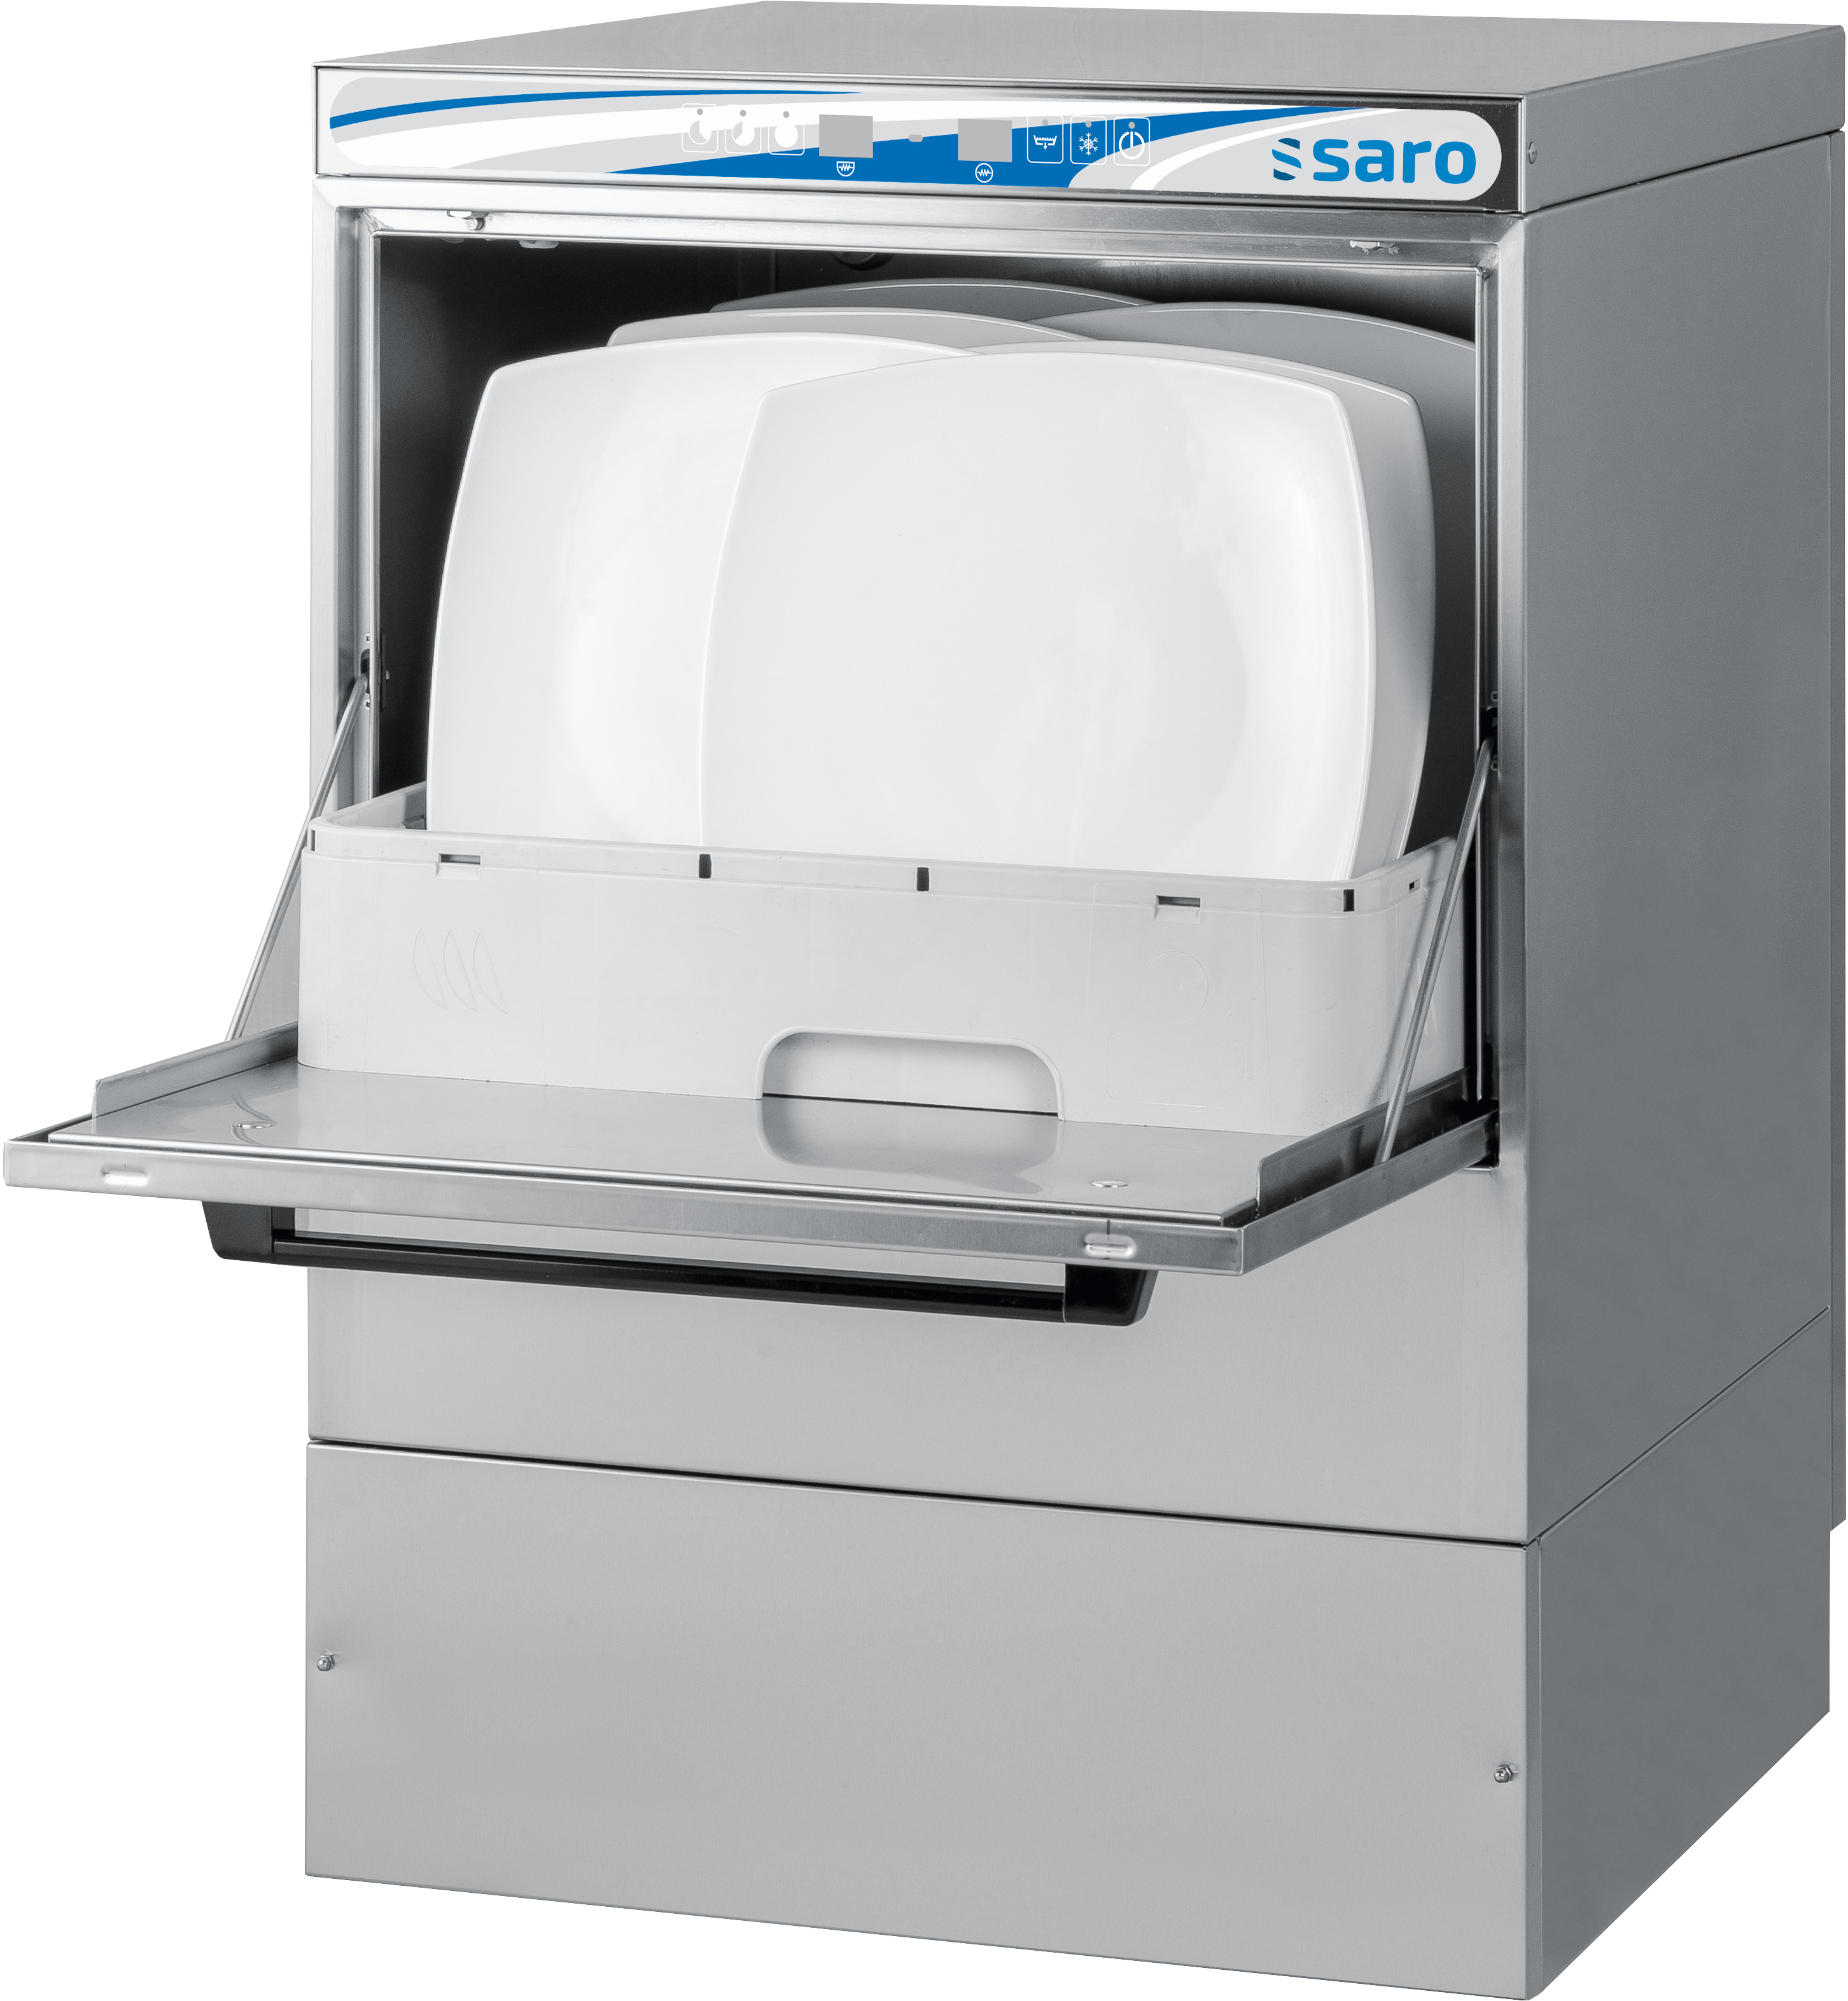 Geschirrspülmaschine mit digitalem Display
Modell NÜRNBERG 400